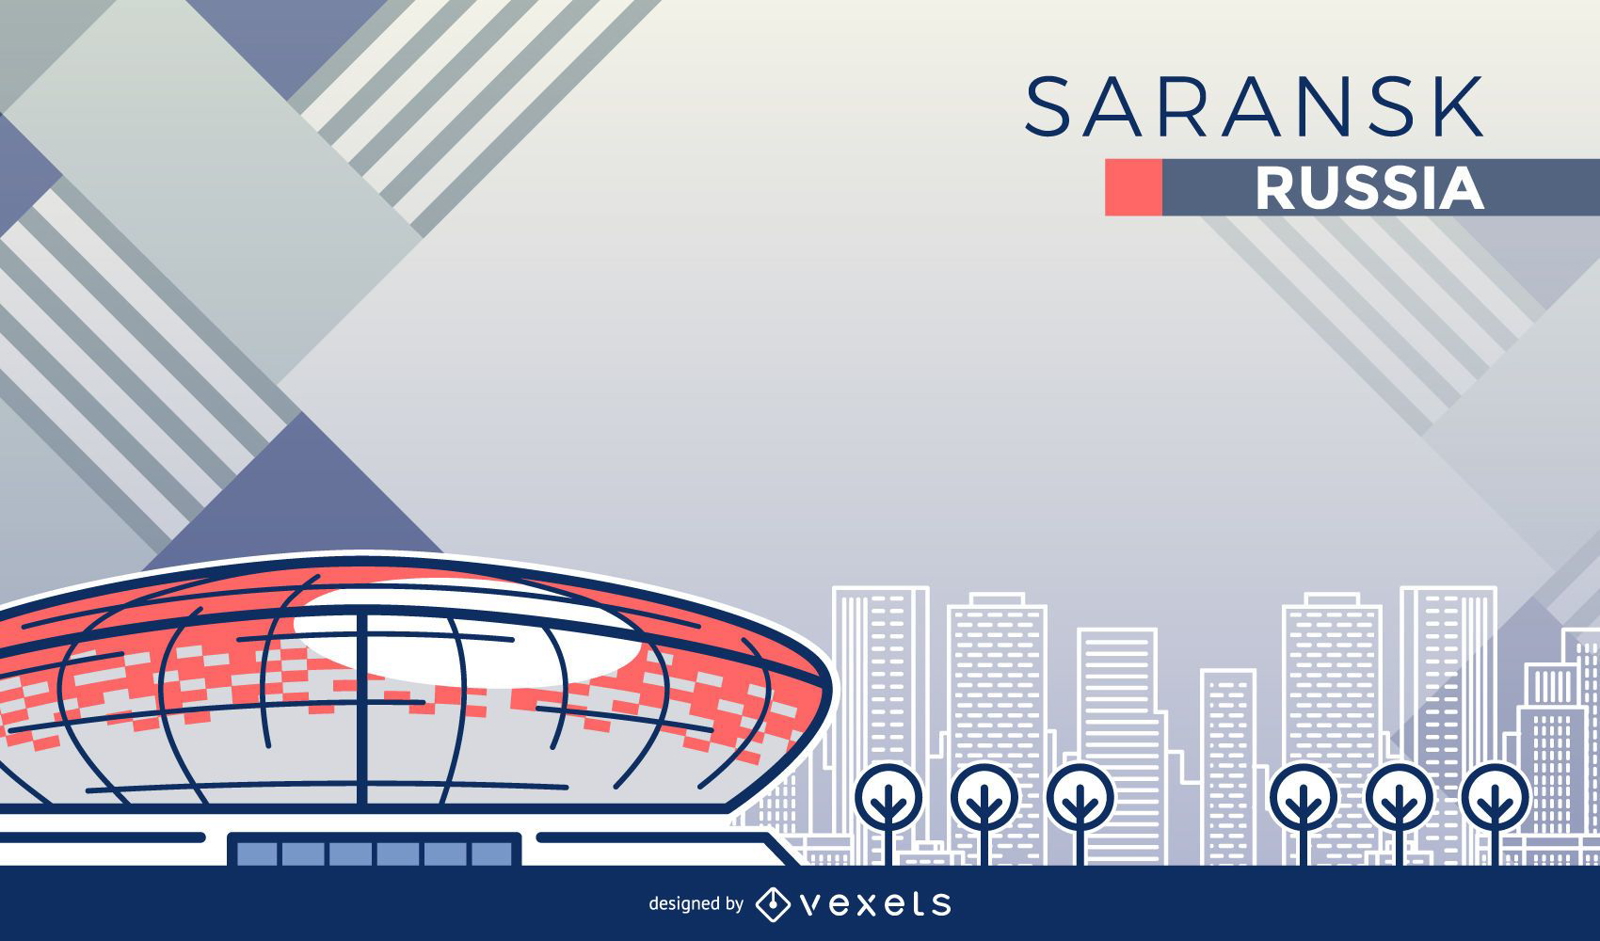 Desenhos animados do estádio de futebol de Saransk